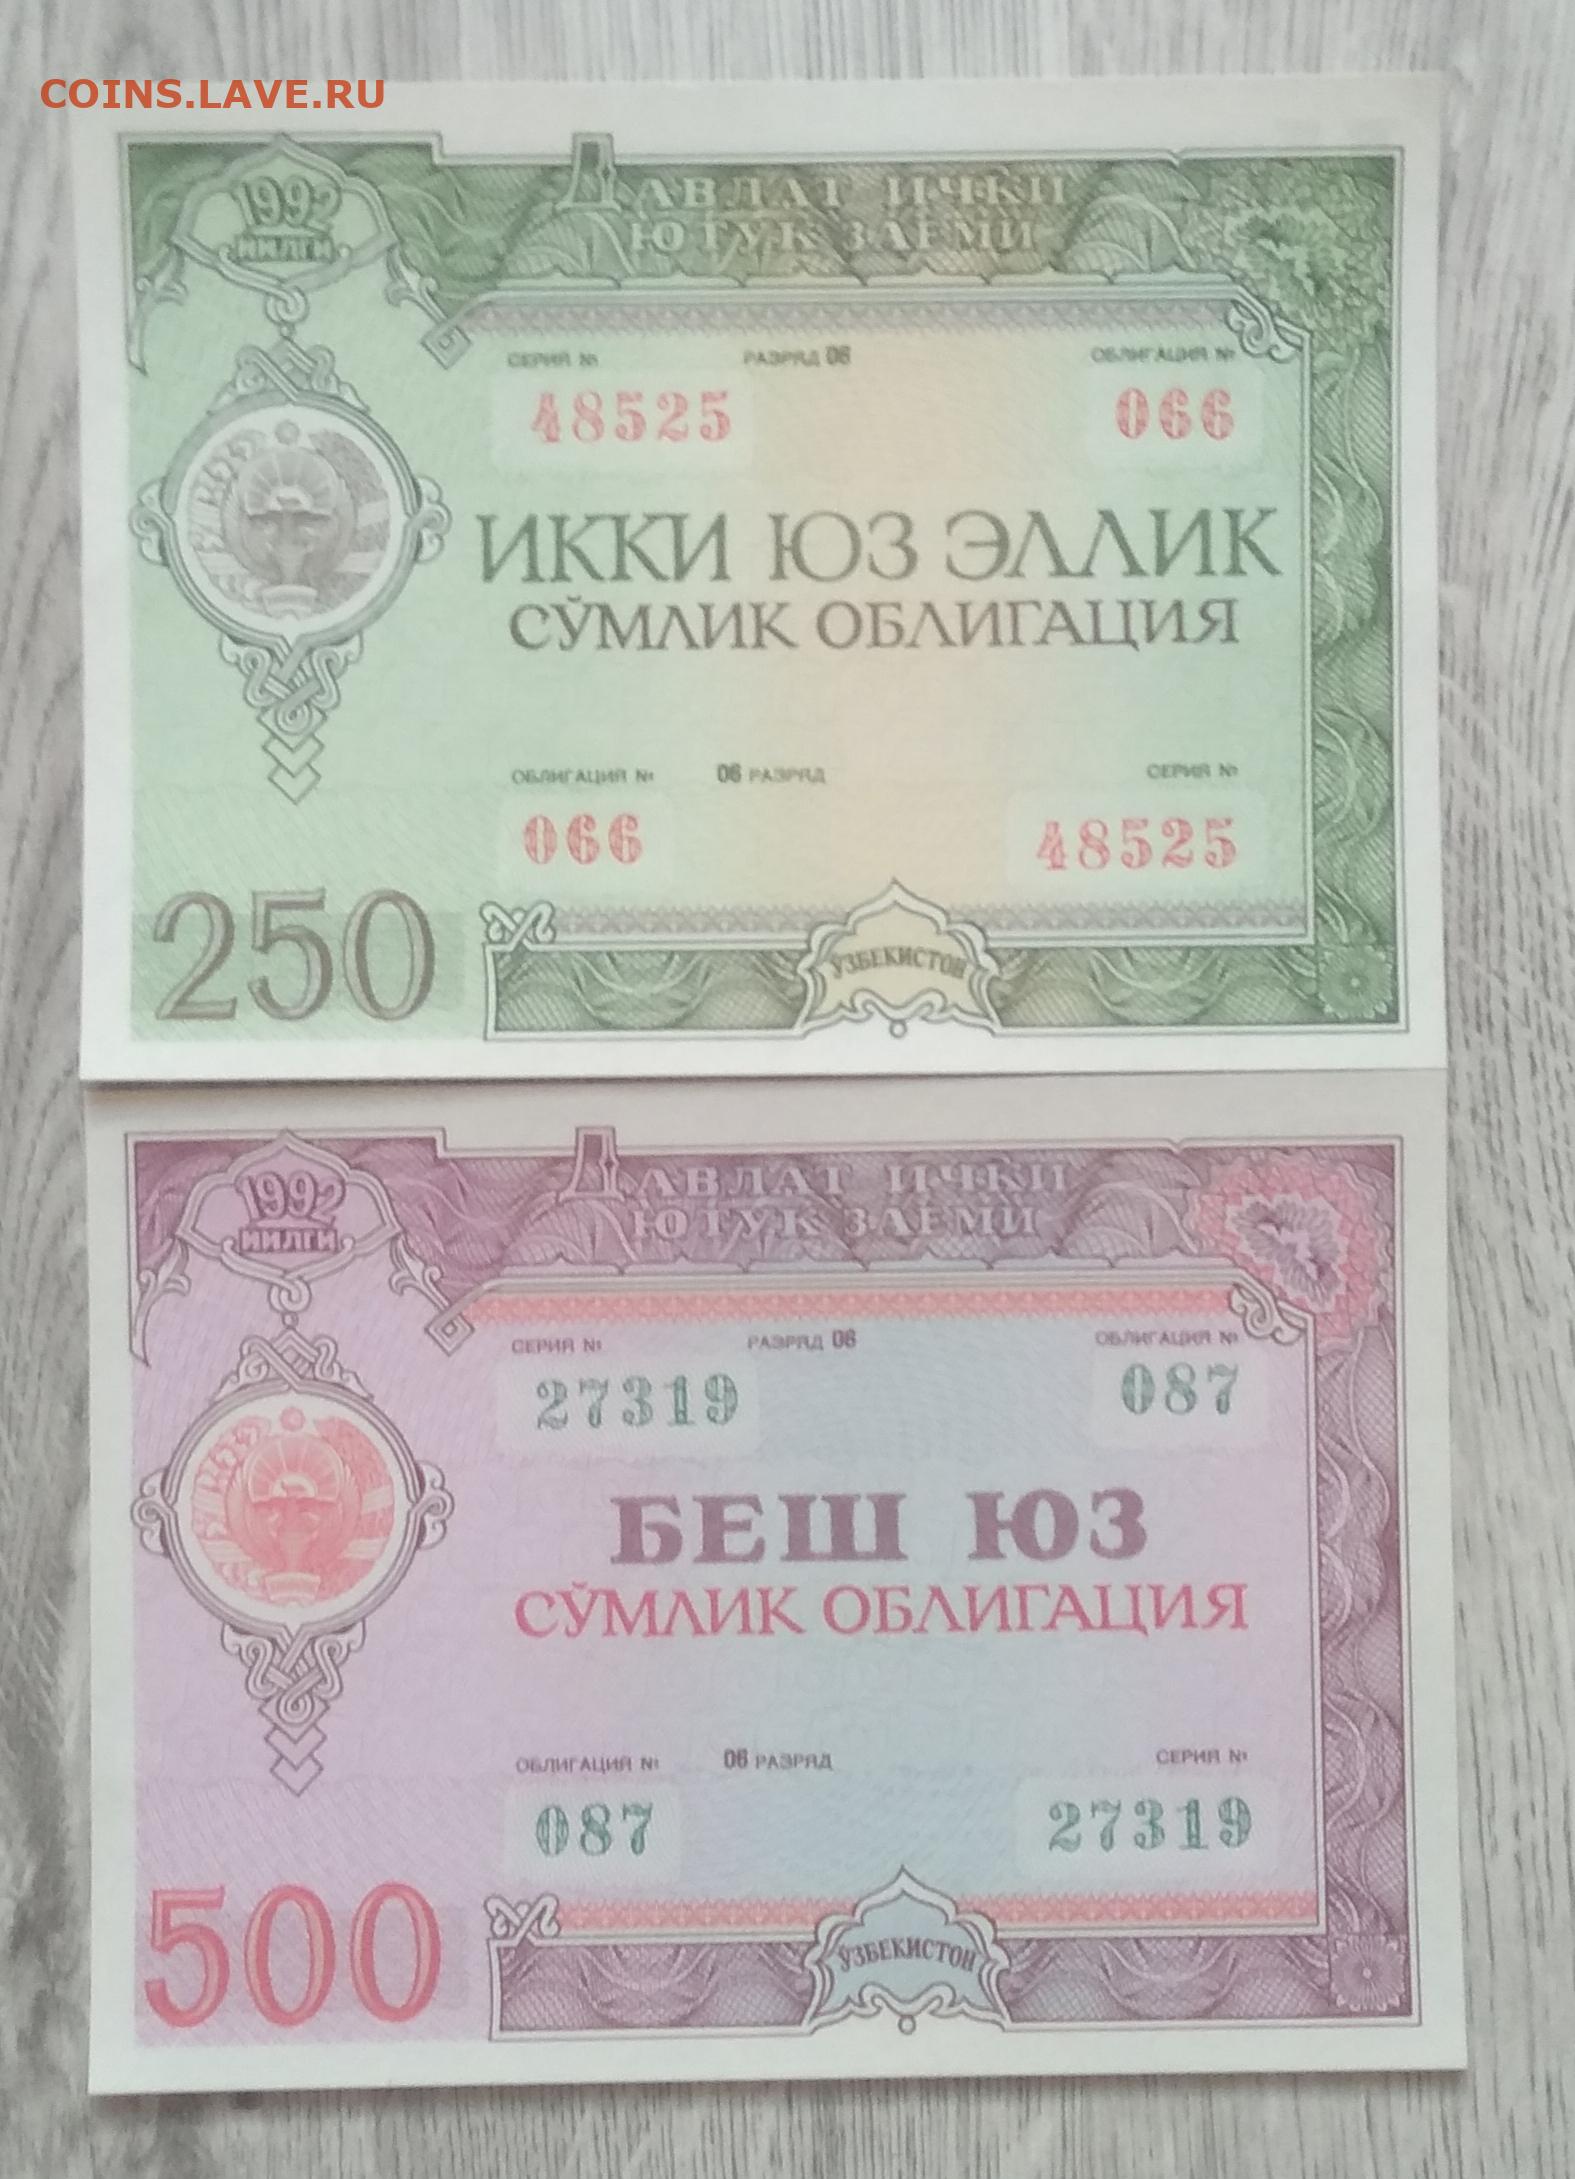 1 рубль в сумах узбекистан на сегодня